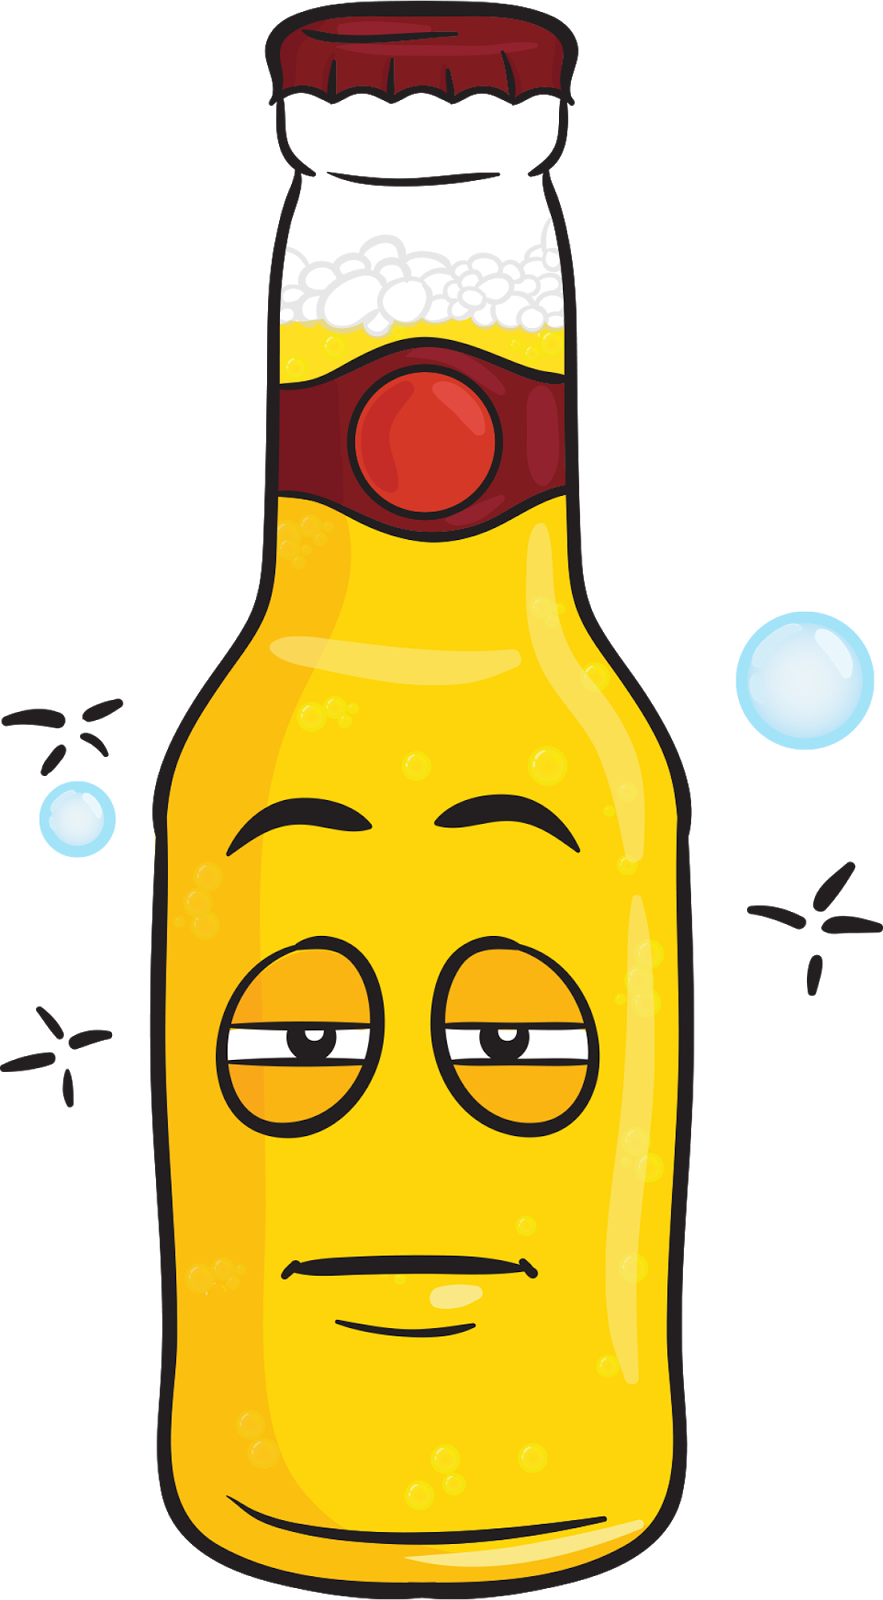 Upcoming Jacksonville Craft Beer Events - Cartoon Drunk Beer Bottle (883x1600)